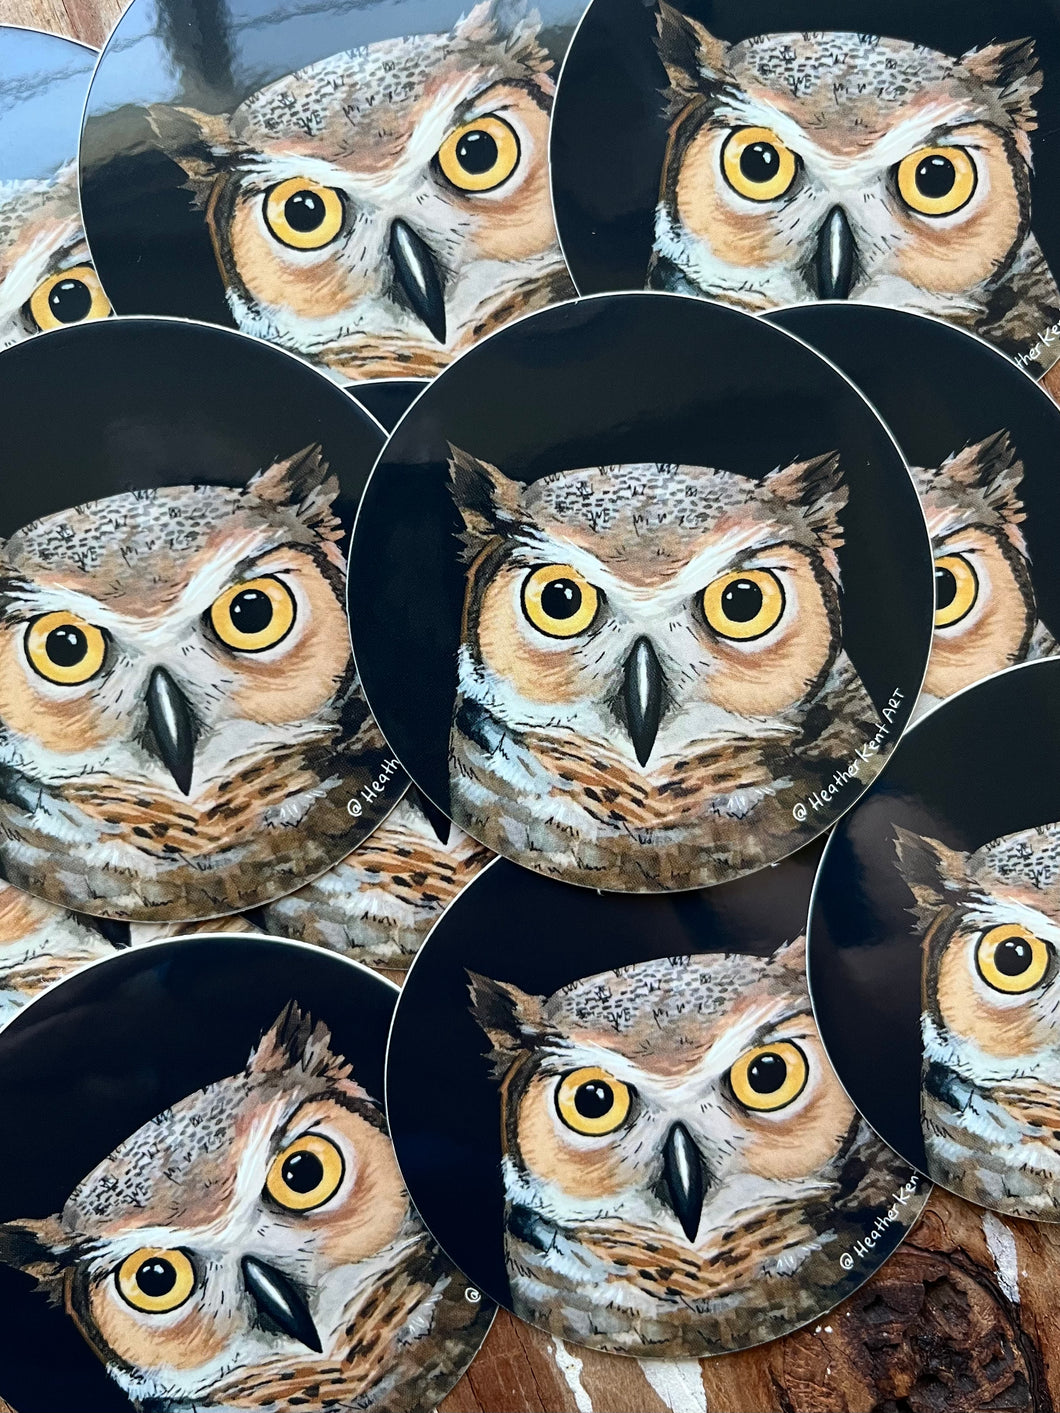 Owl Portrait Art Sticker, Round Vinyl Sticker, FREE SHIPPING